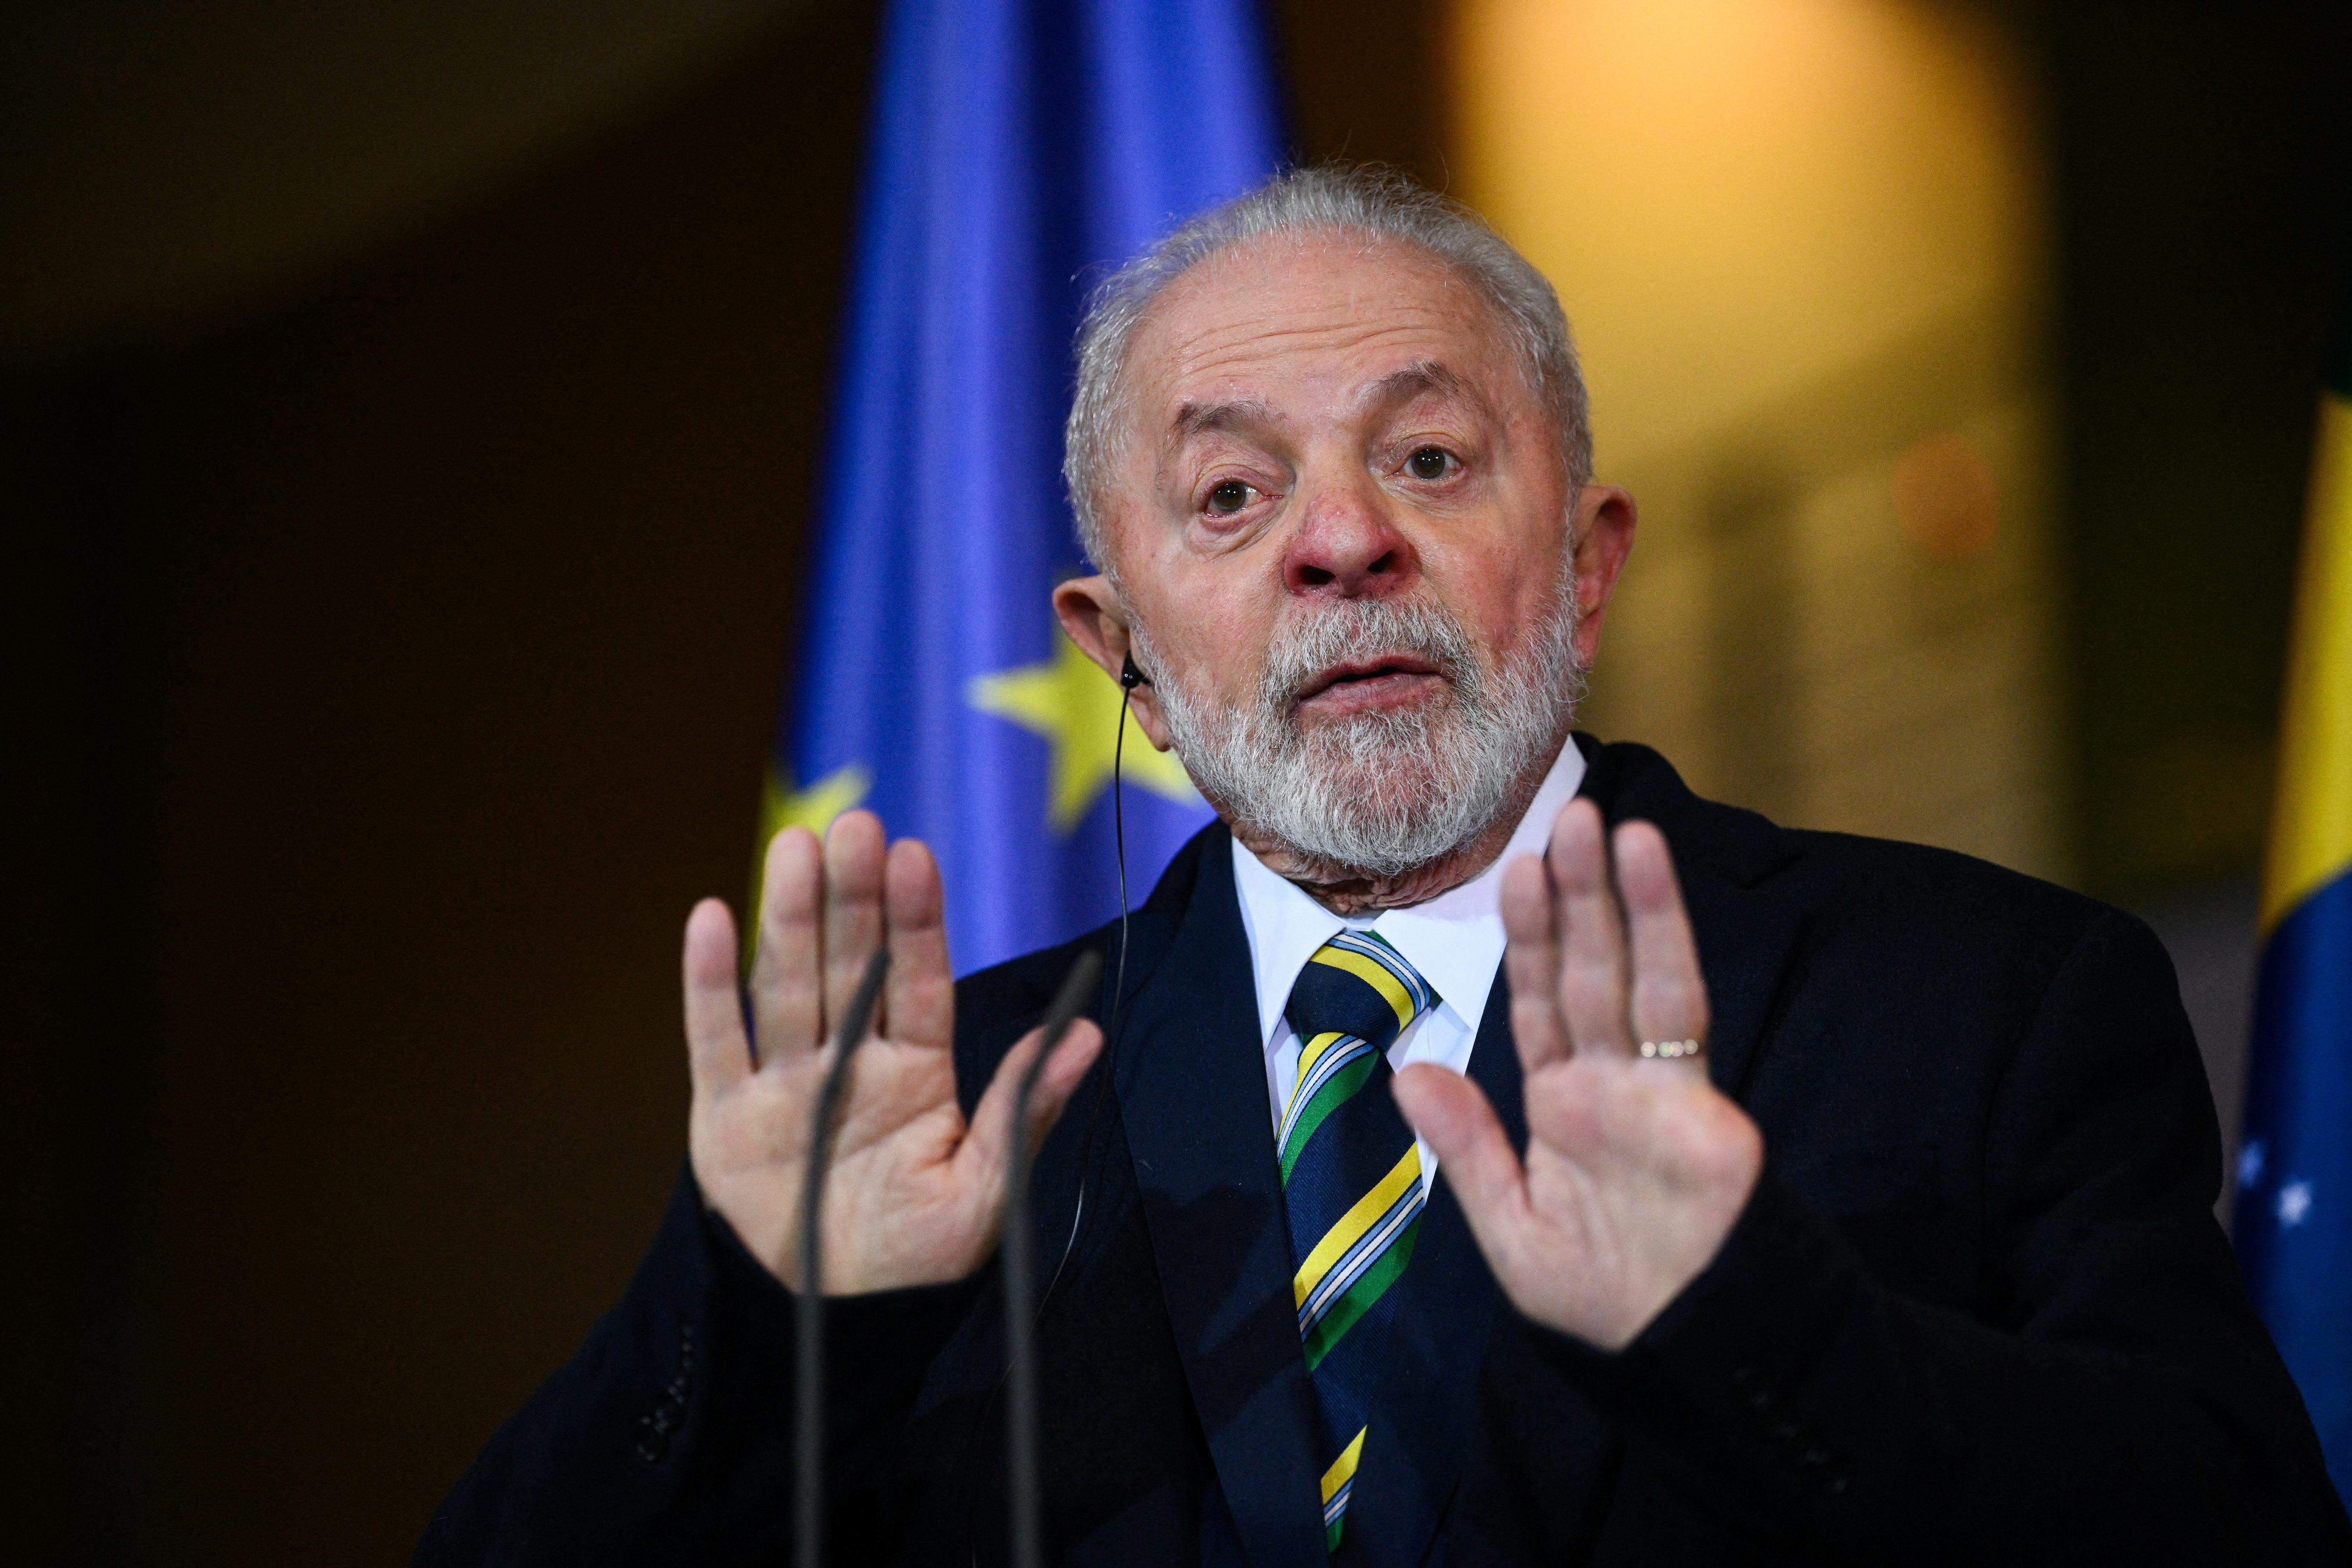 Bajo el árbol de Navidad, los brasileños encontraron decepción por las promesas incumplidas de Lula